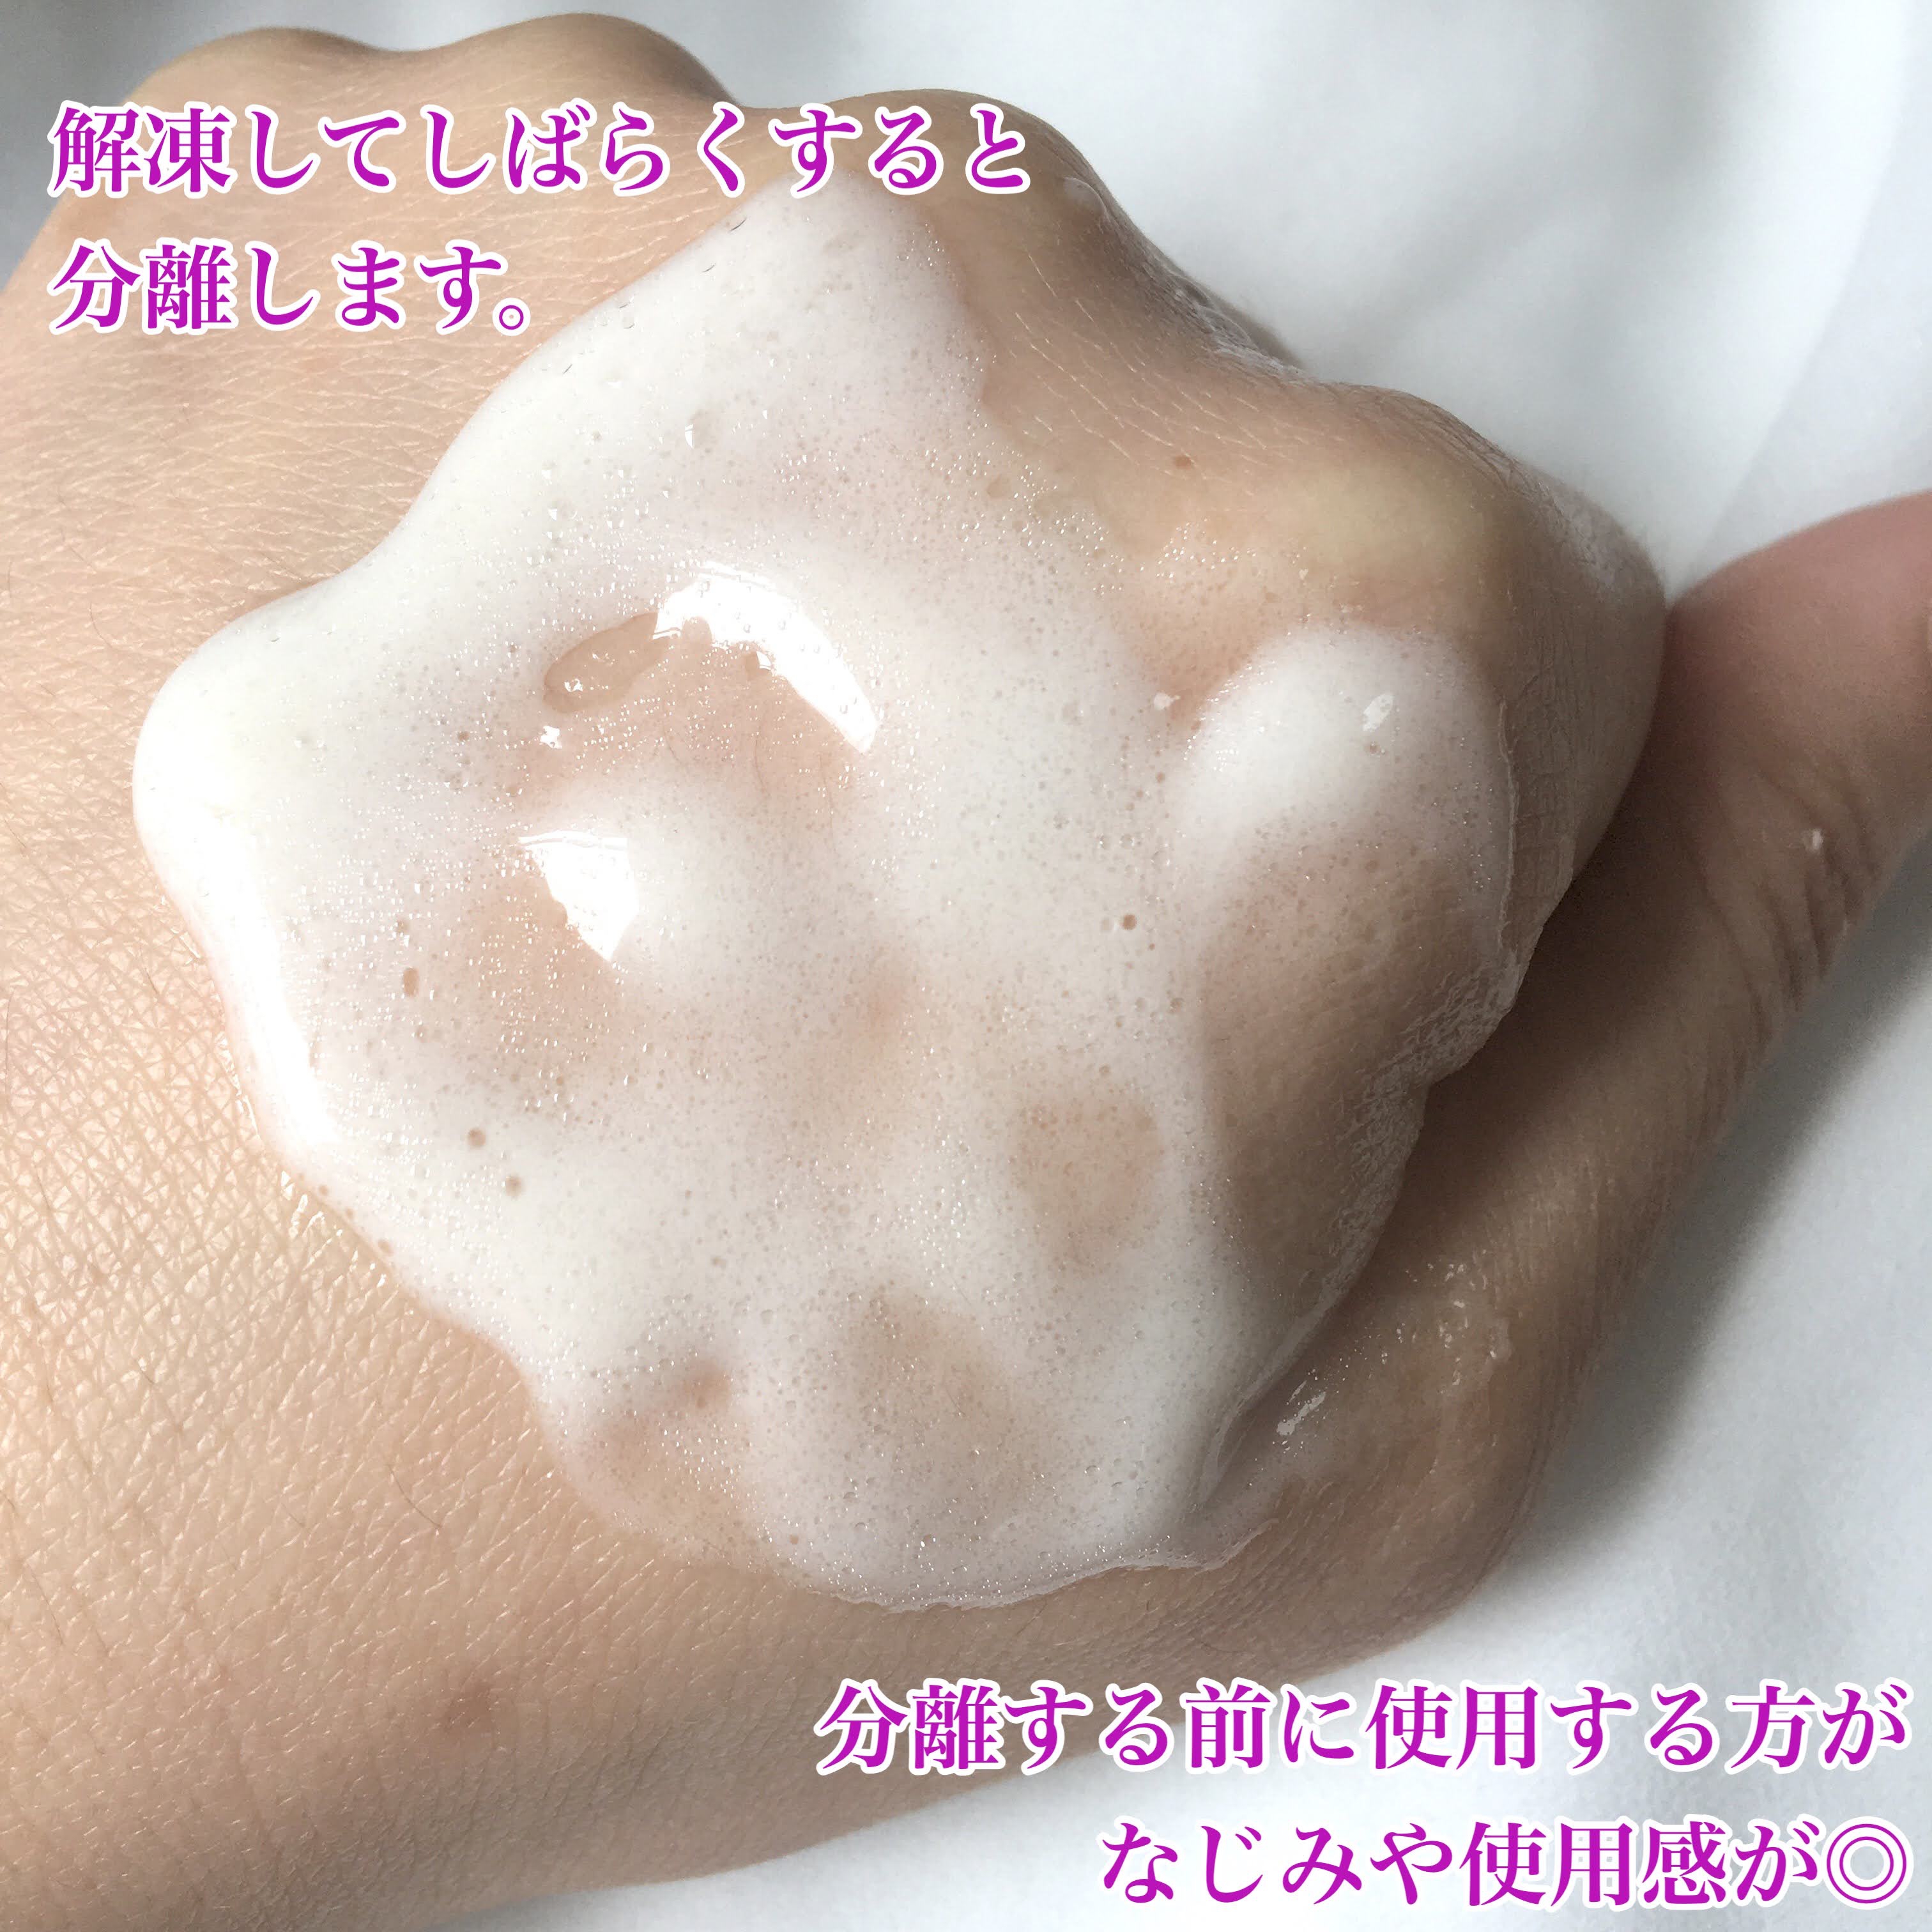 麗凍化粧品(Reitou Cosme) 美容液クリームを使ったぶるどっくさんのクチコミ画像7